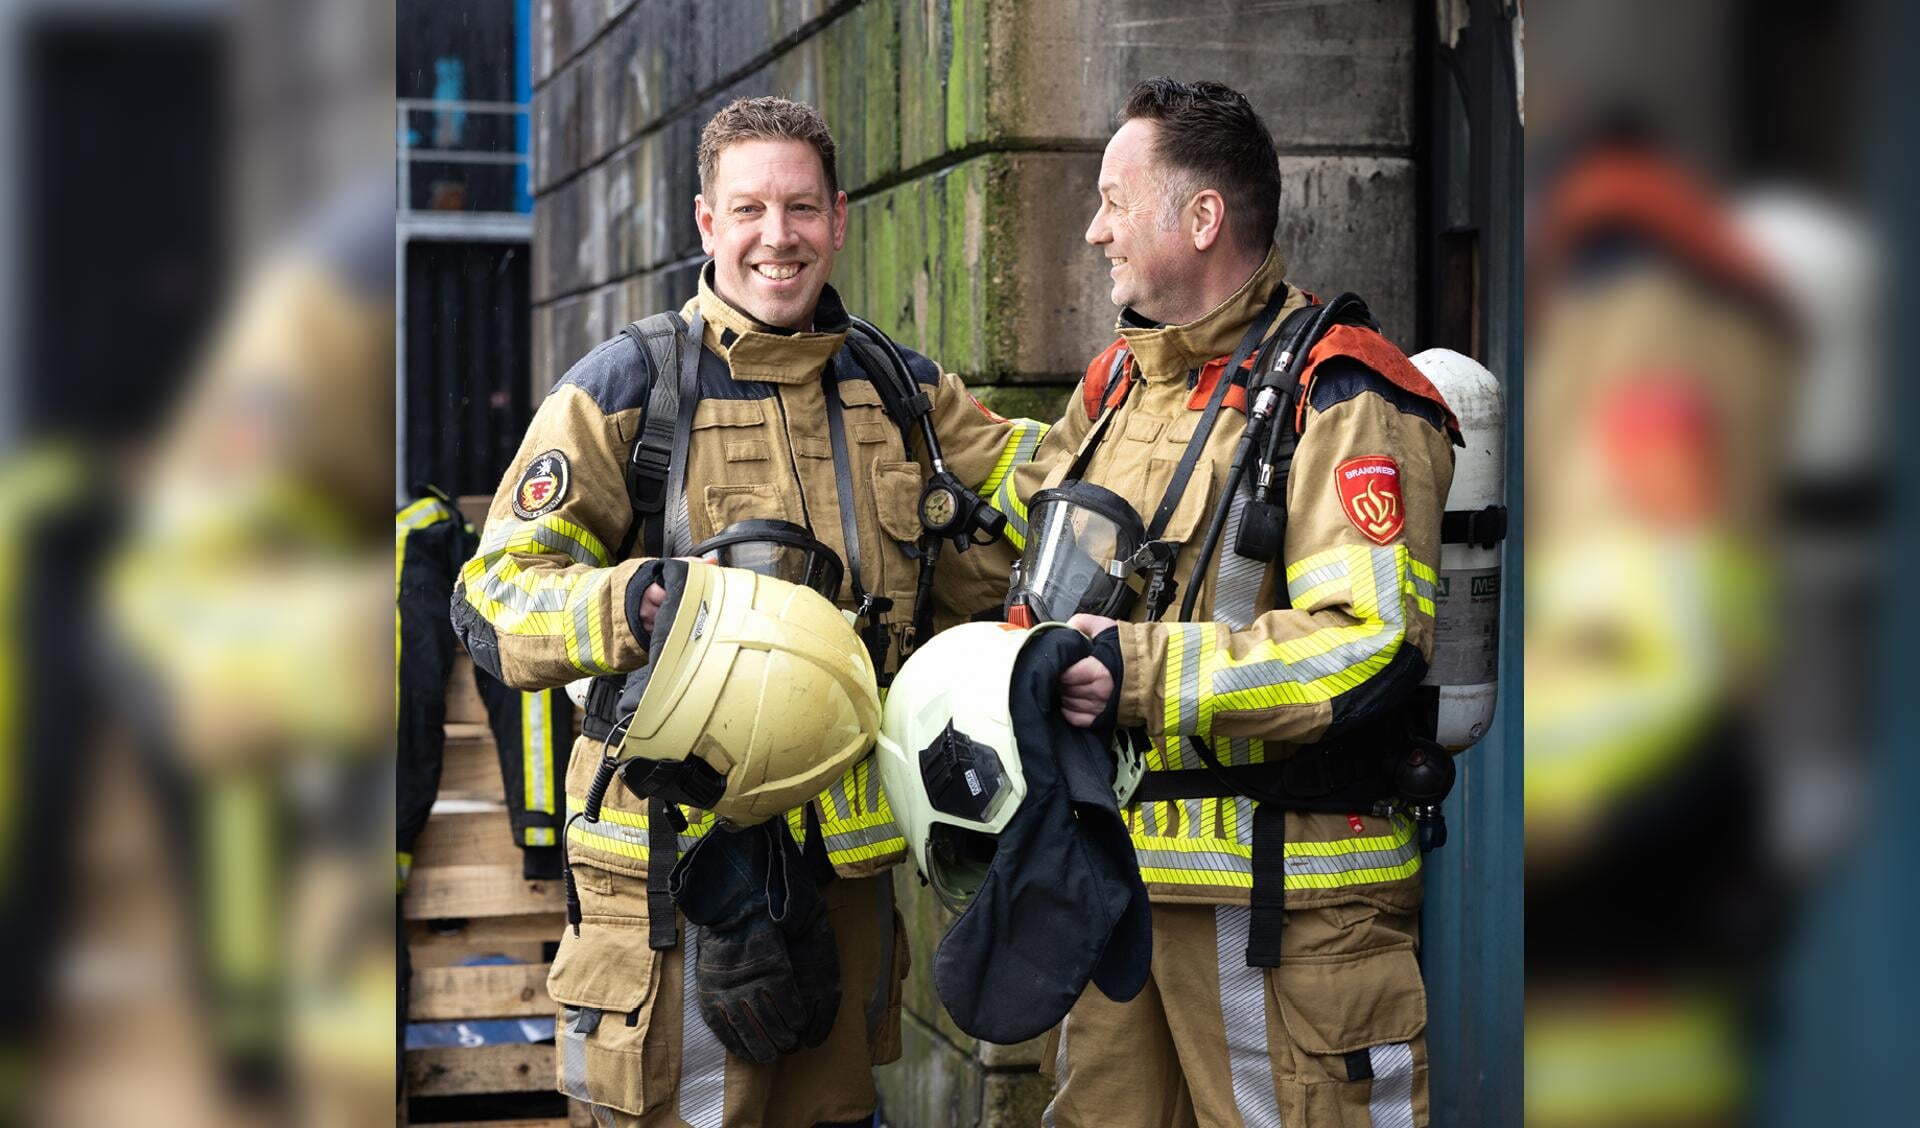 Het werk als brandweervrijwilliger is divers en uitdagend.